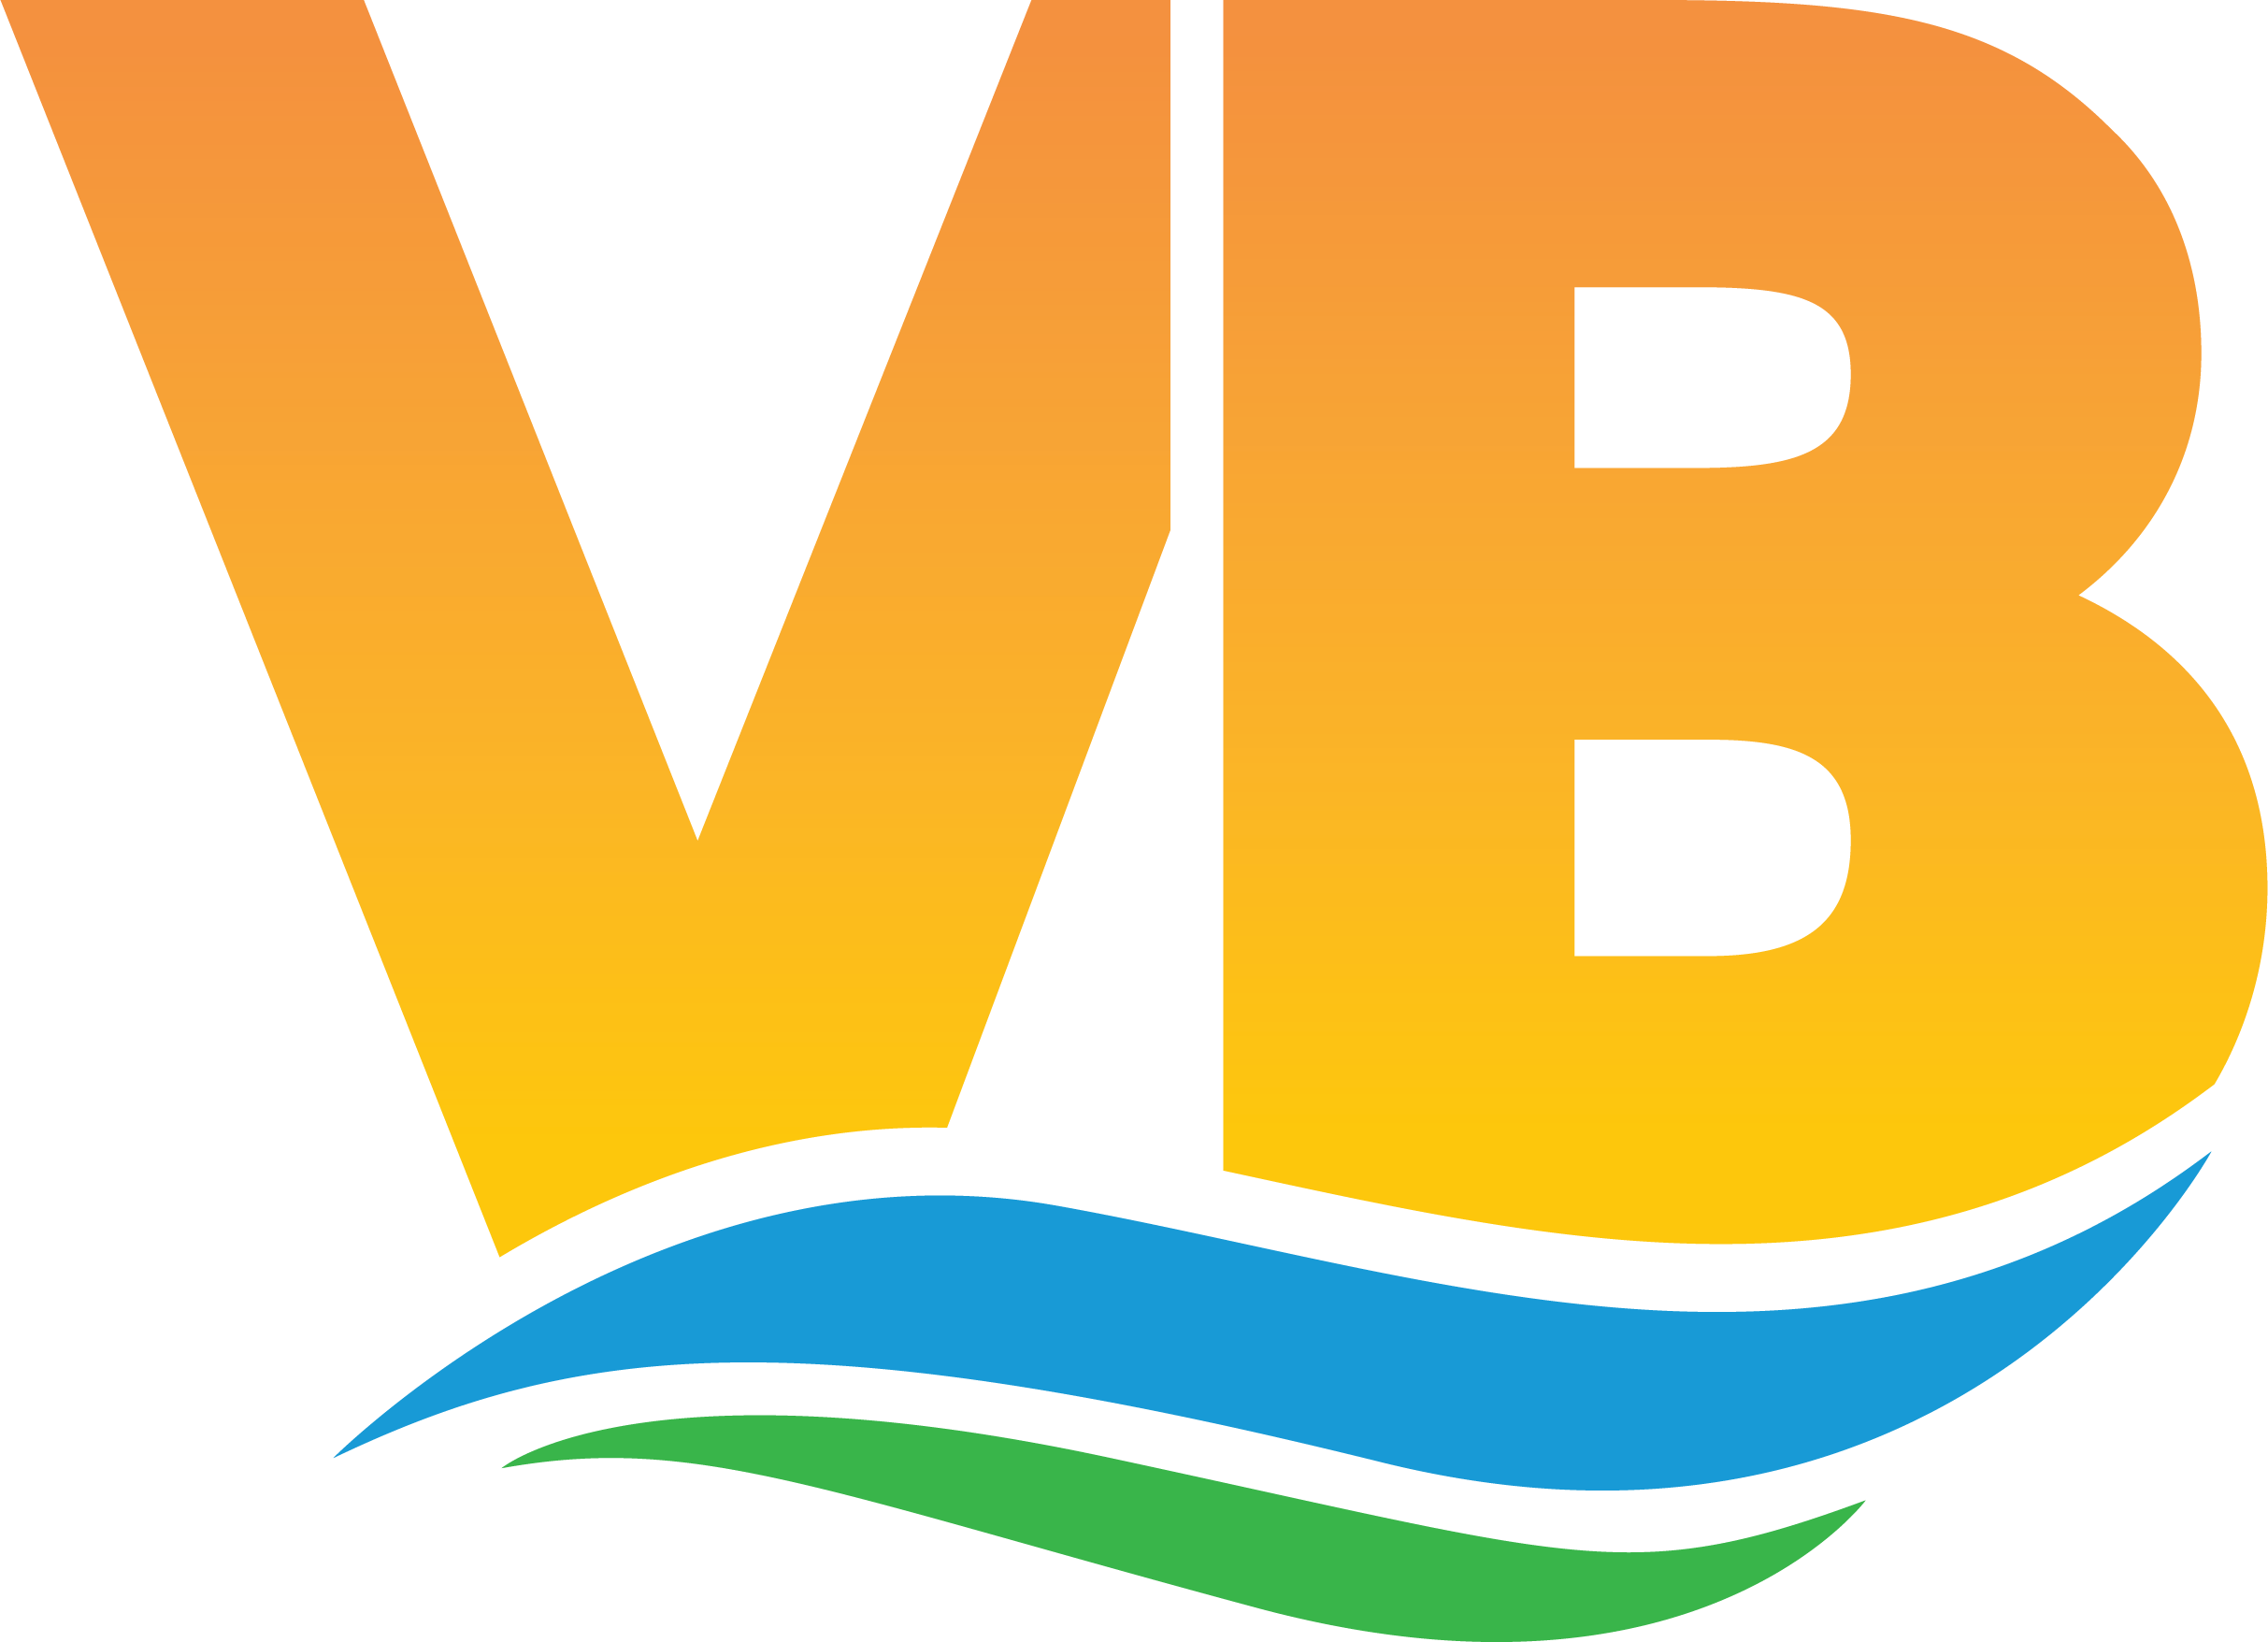 The City of Virginia Beach Open Data